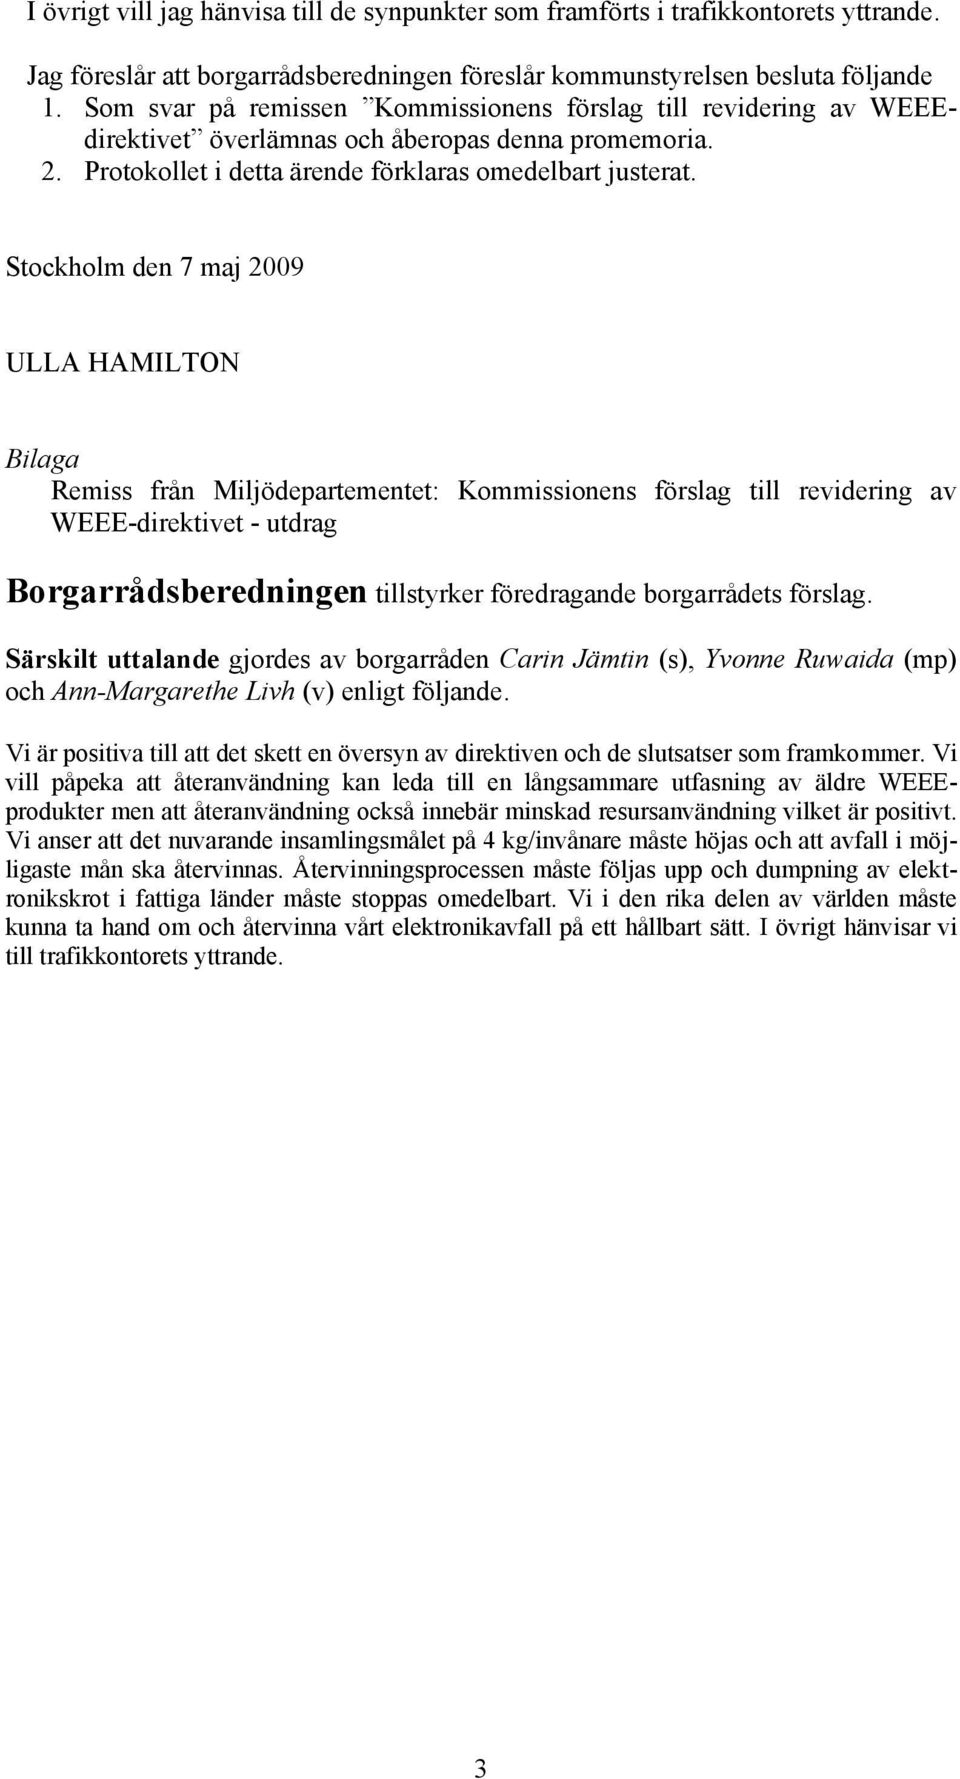 Stockholm den 7 maj 2009 ULLA HAMILTON Bilaga Remiss från Miljödepartementet: Kommissionens förslag till revidering av WEEE-direktivet - utdrag Borgarrådsberedningen tillstyrker föredragande